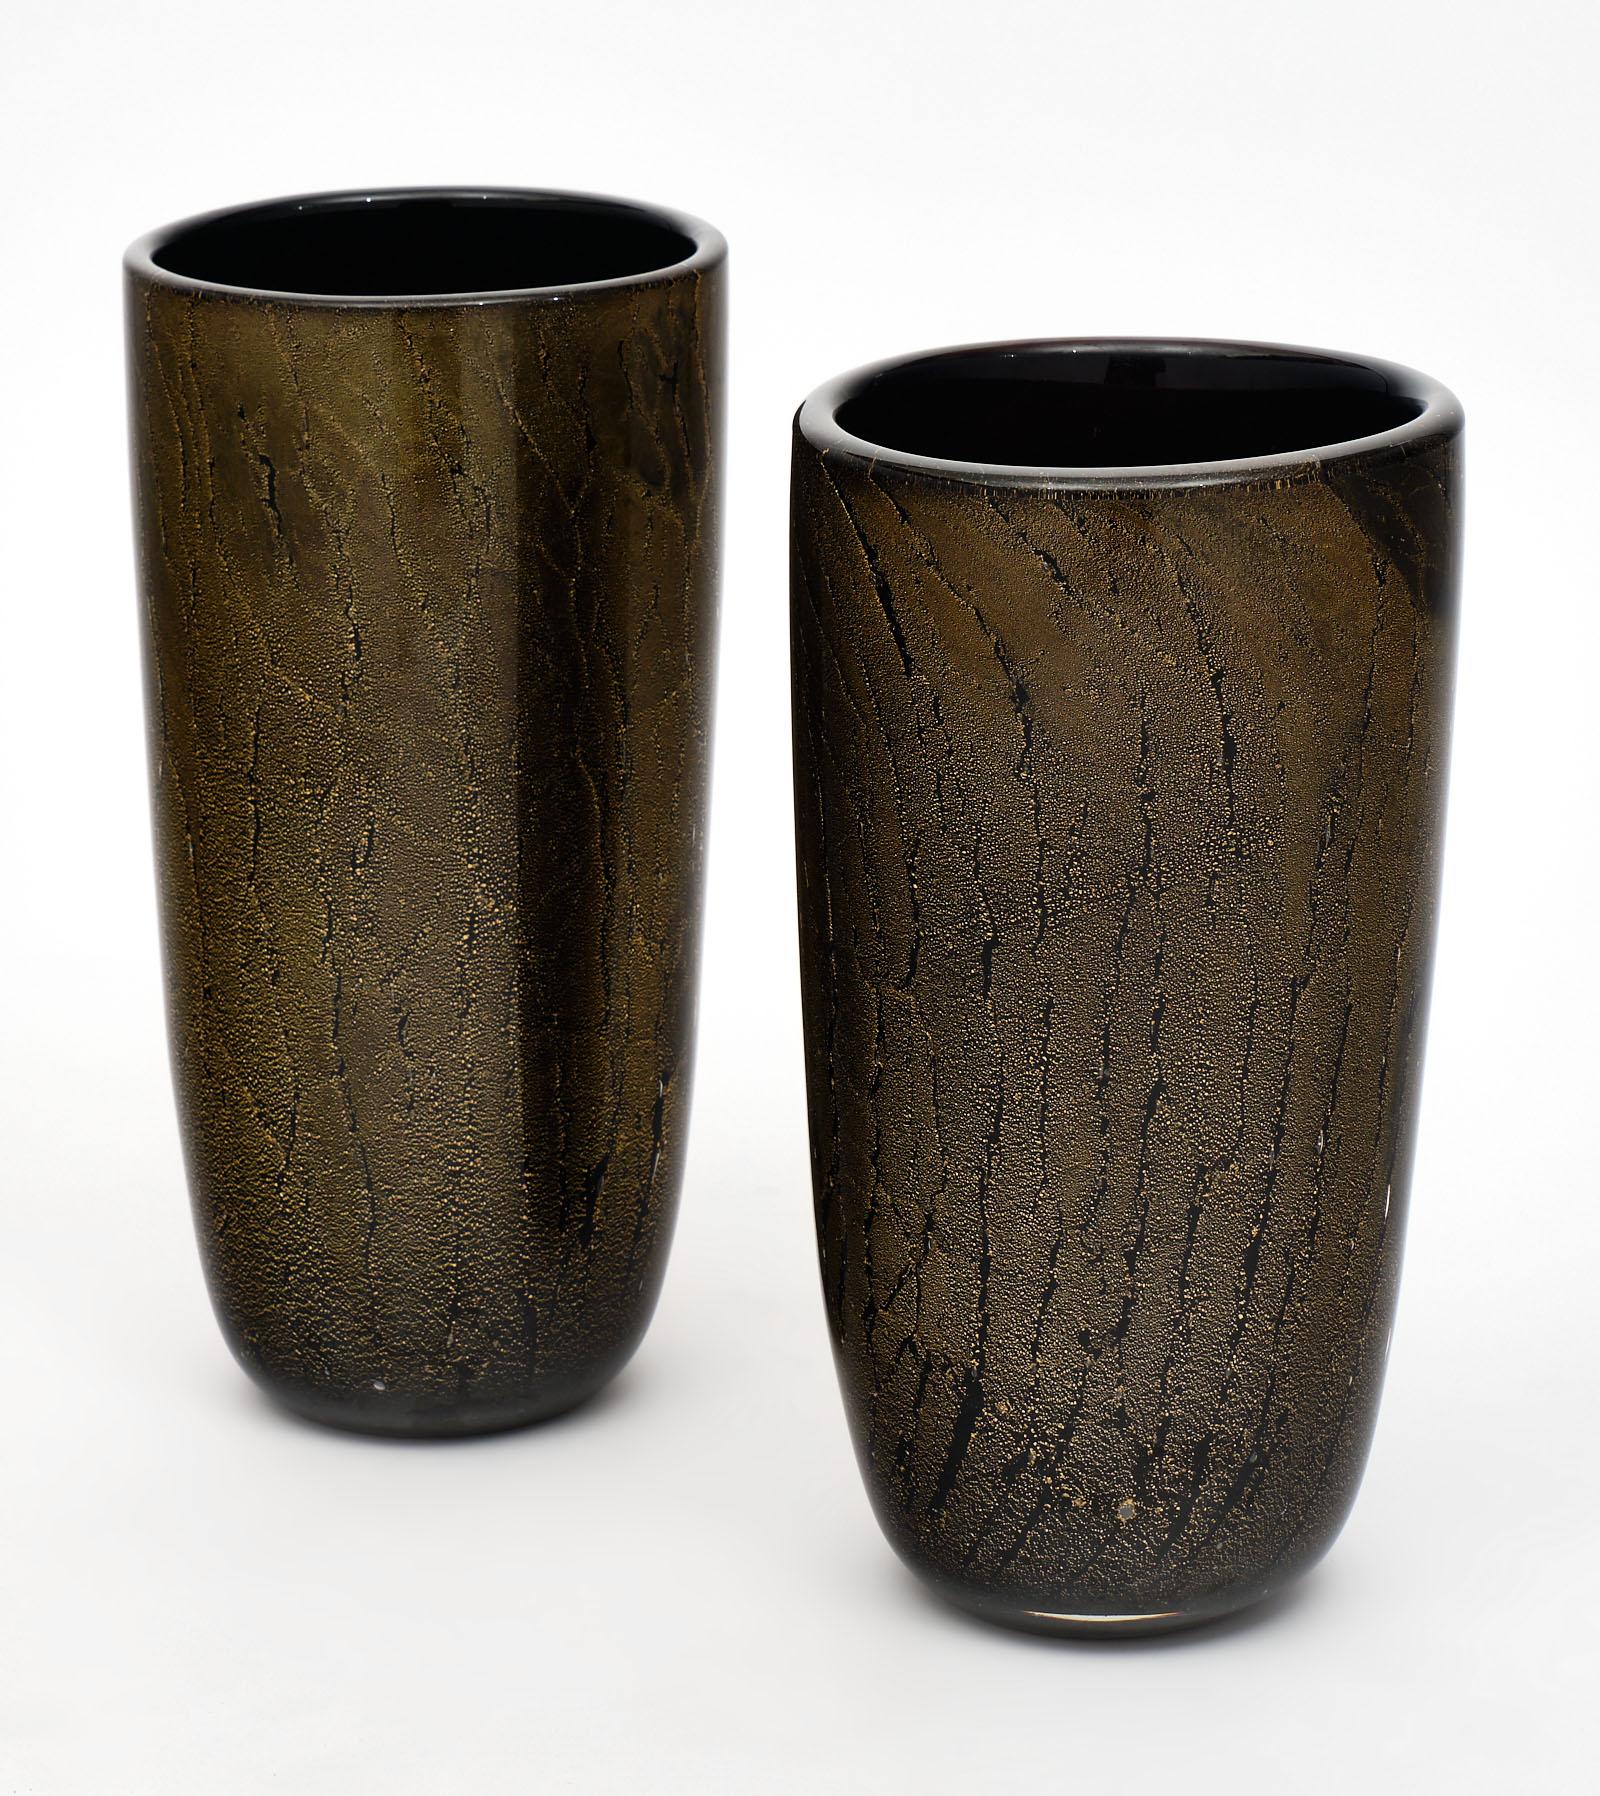 Vases en verre de Murano noir et Avventurina avec feuille d'or 23 carats appliquée sur le verre noir alors qu'il est encore en fusion. Nous adorons ces pièces soufflées à la main, qui témoignent d'un superbe savoir-faire. Comme ces vases sont